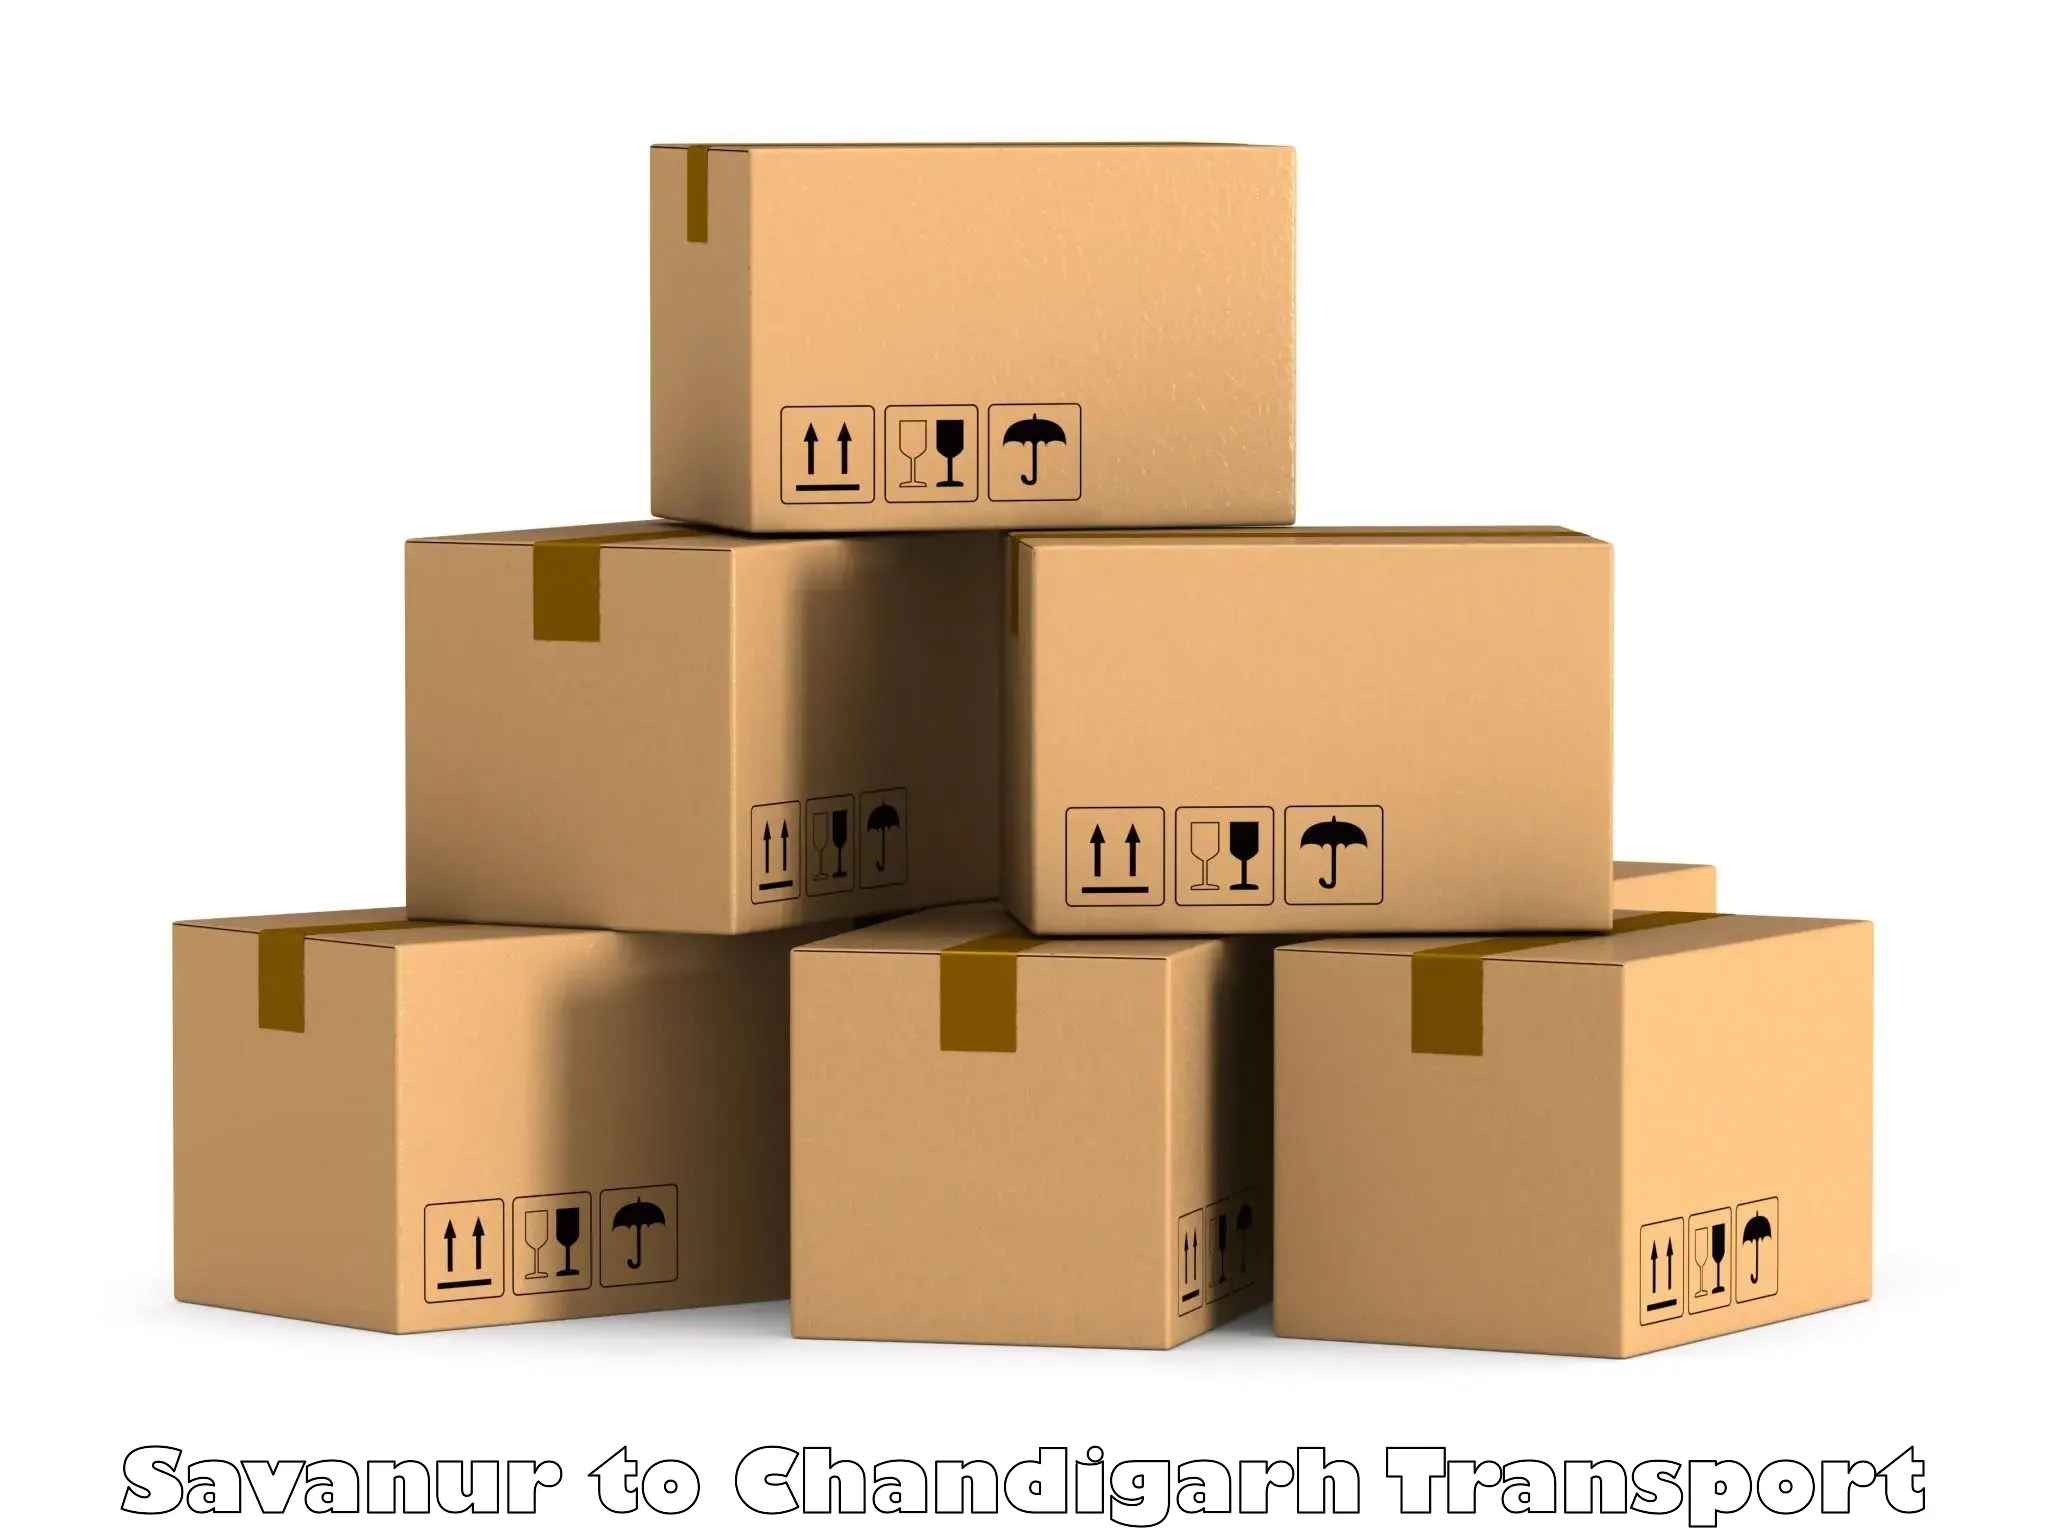 Container transport service Savanur to Chandigarh